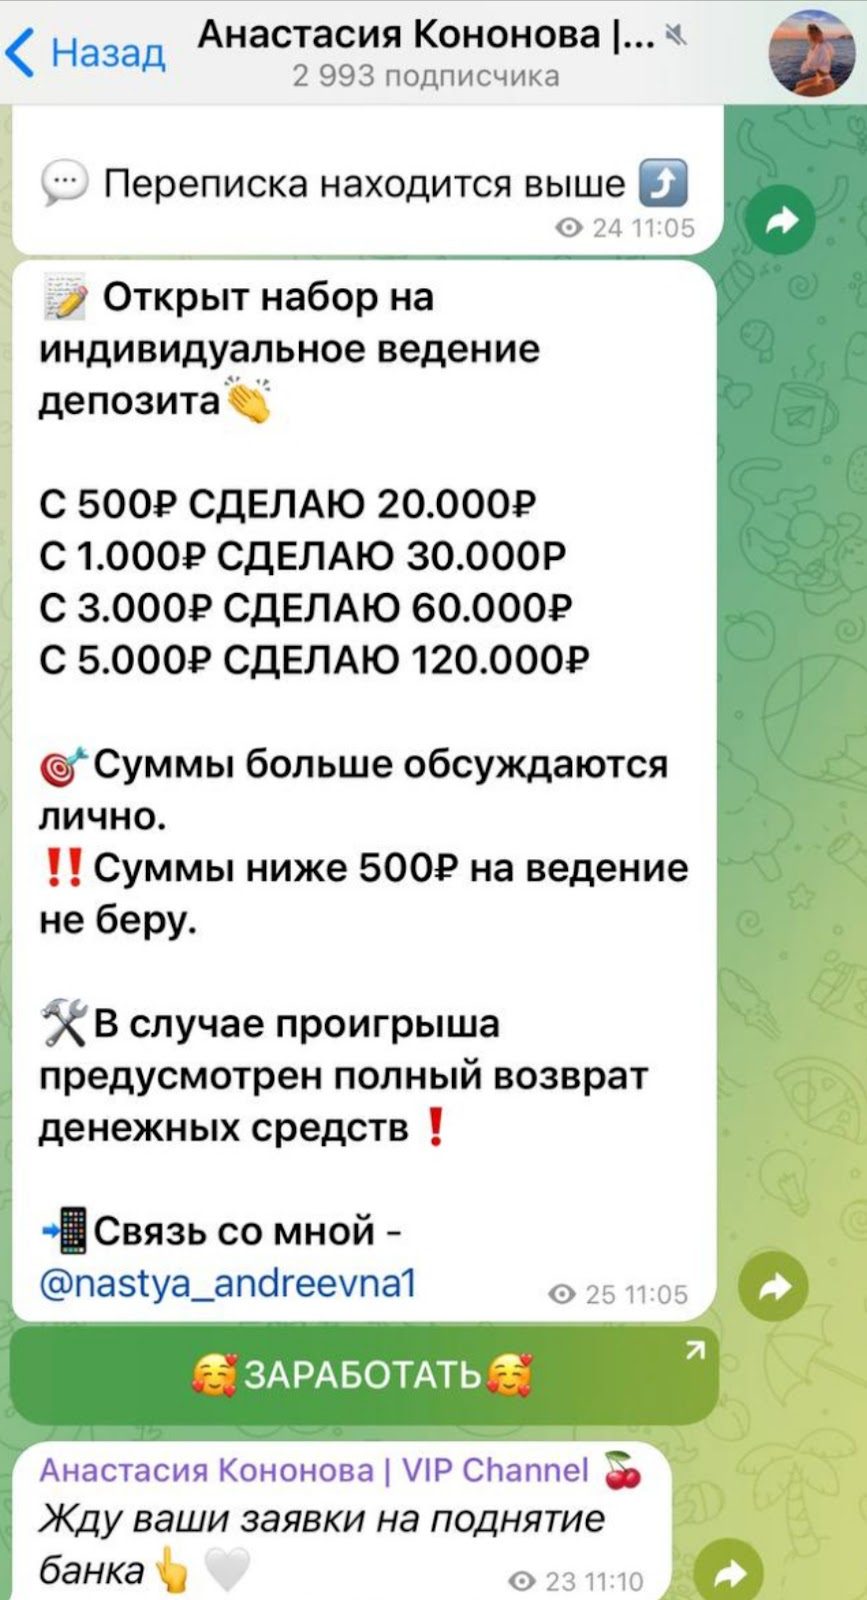 Анастасия Кононова телеграмм канал